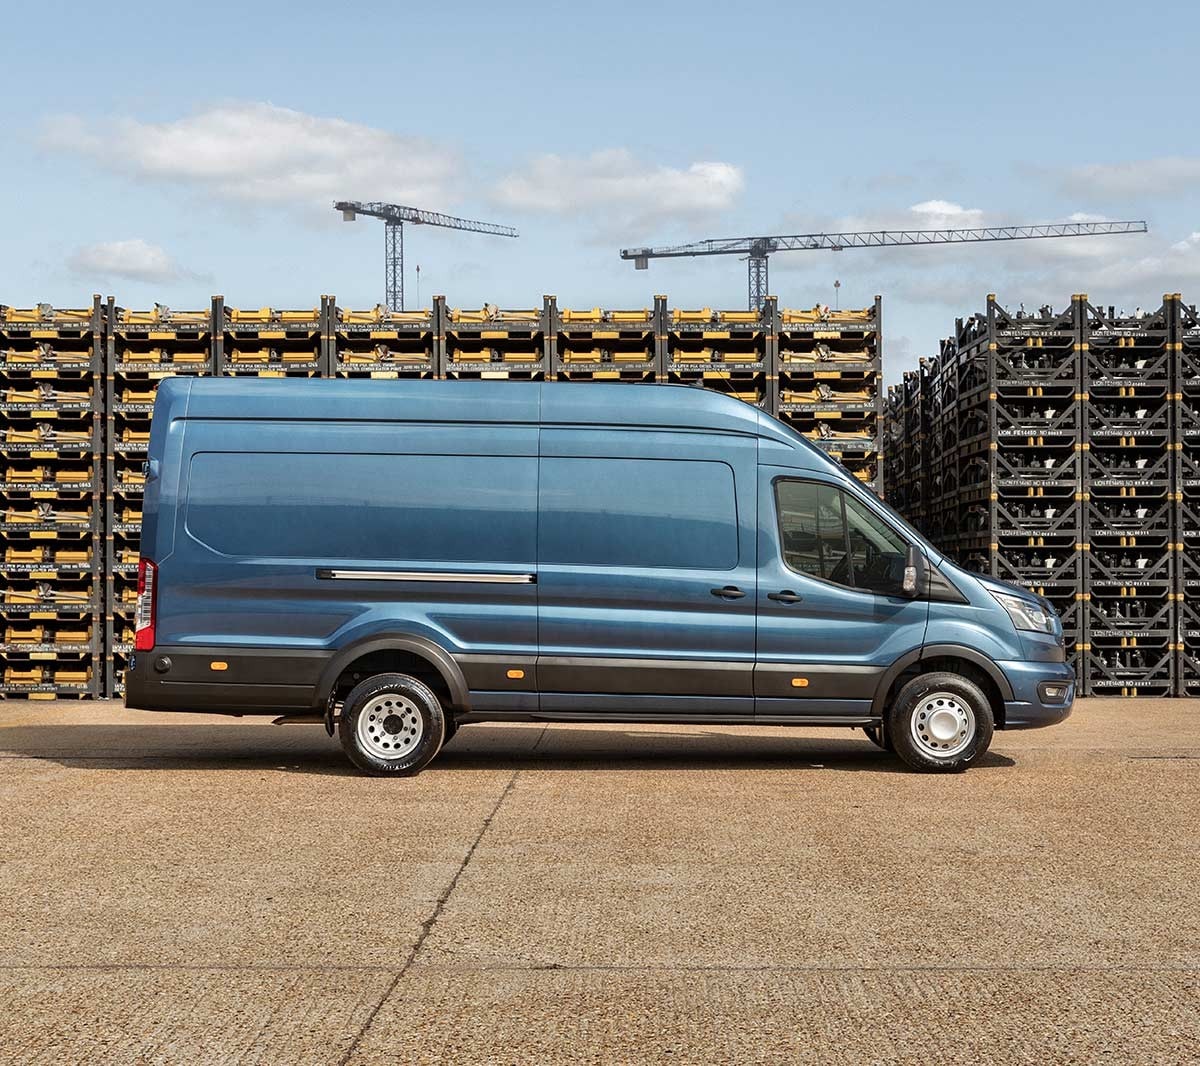 Ford Transit 5 Tonnen Kastenwagen LKW in Blau Seitenansicht parkt auf Betriebsgelände vor Palettenstapeln